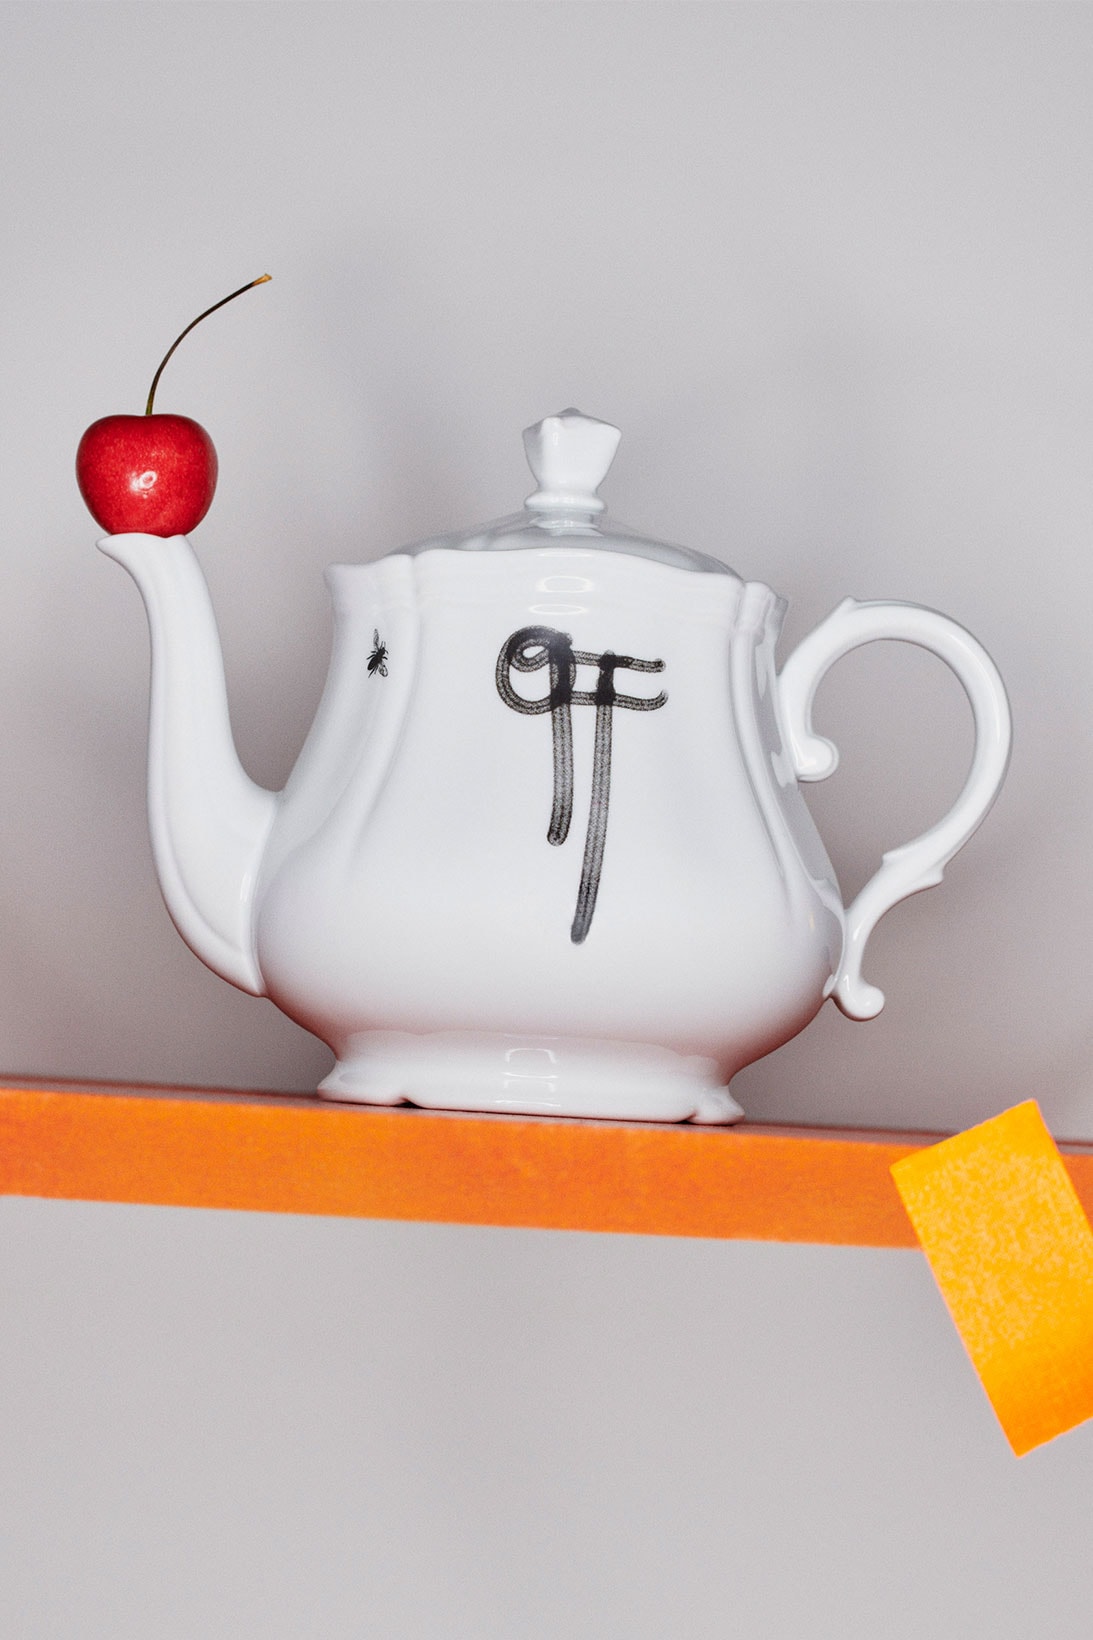 Off-White™x Ginori 1735 collection teapot